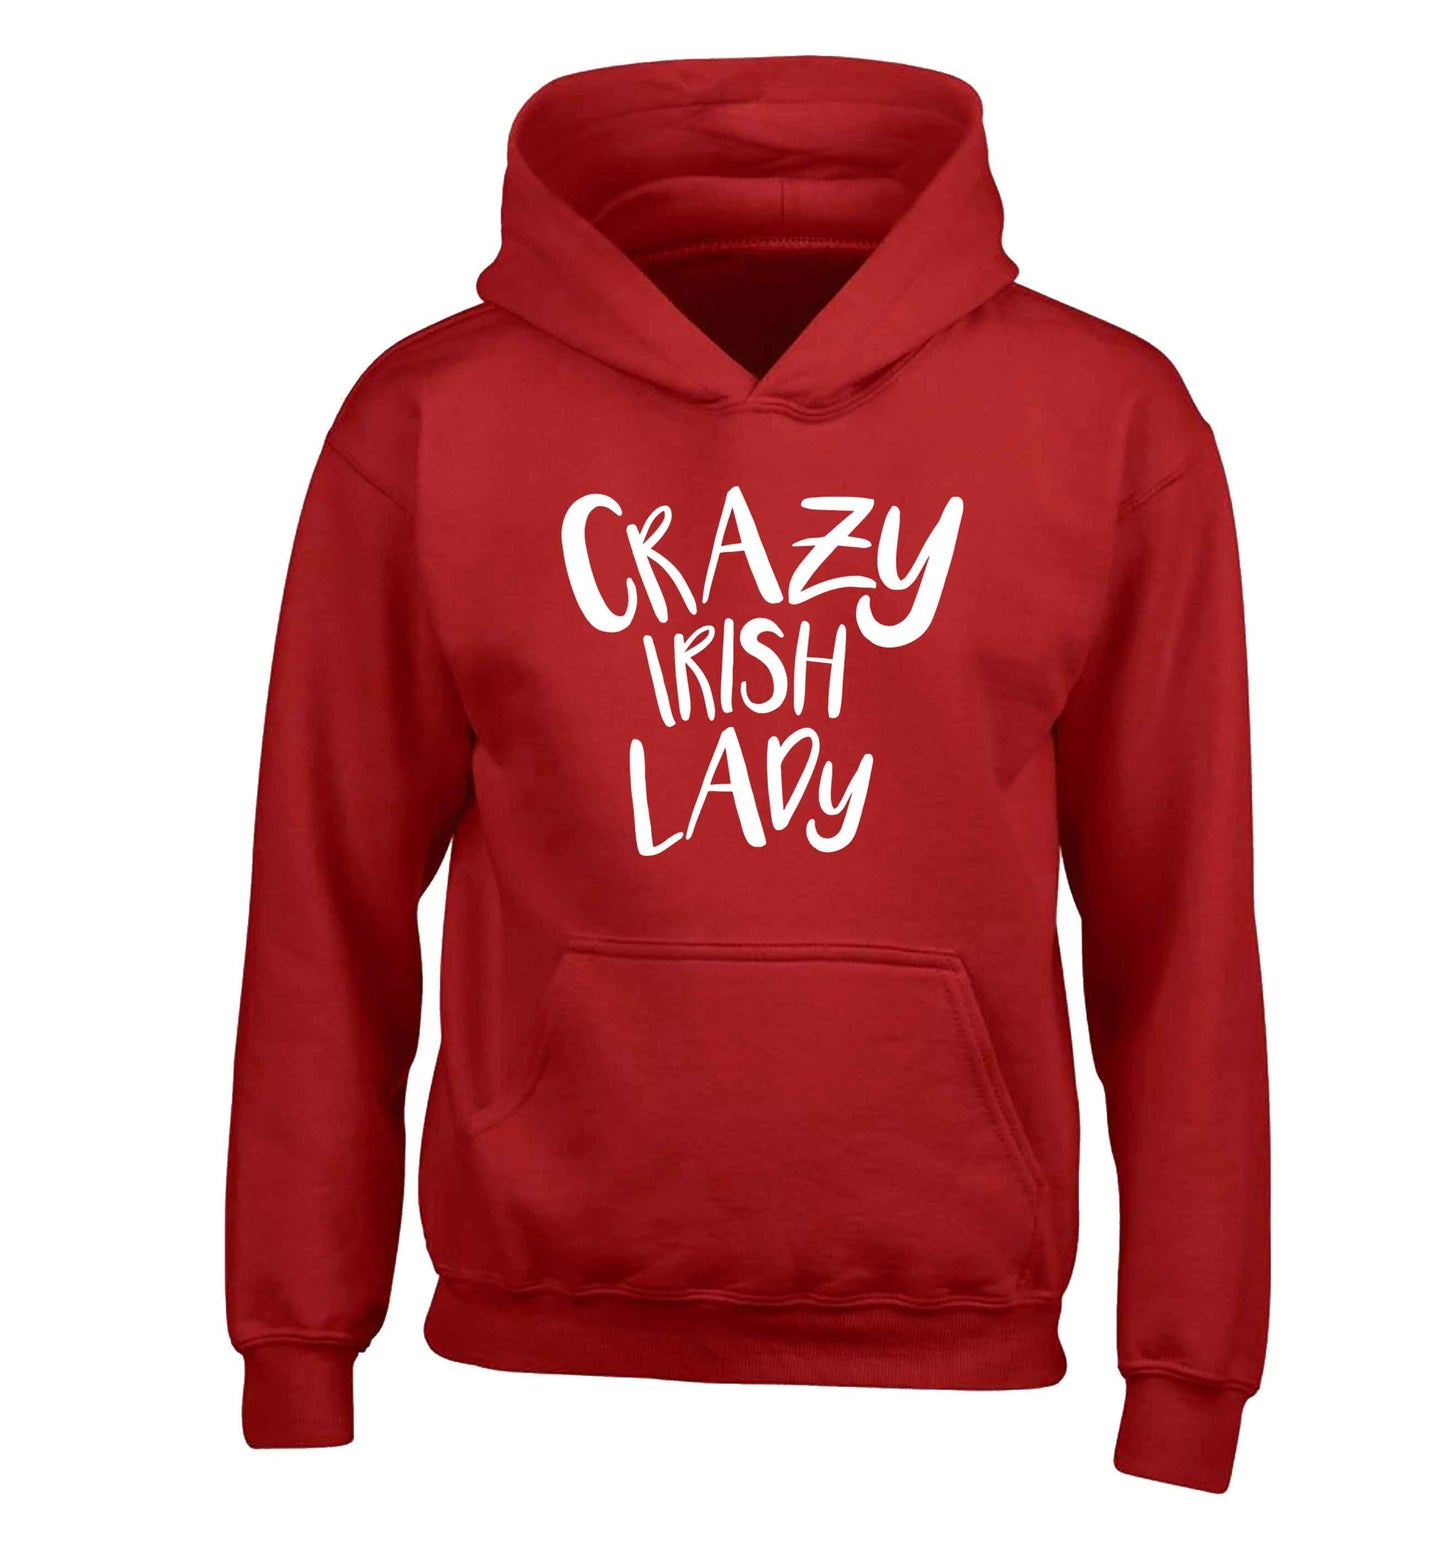 Crazy Irish lady children's red hoodie 12-13 Years